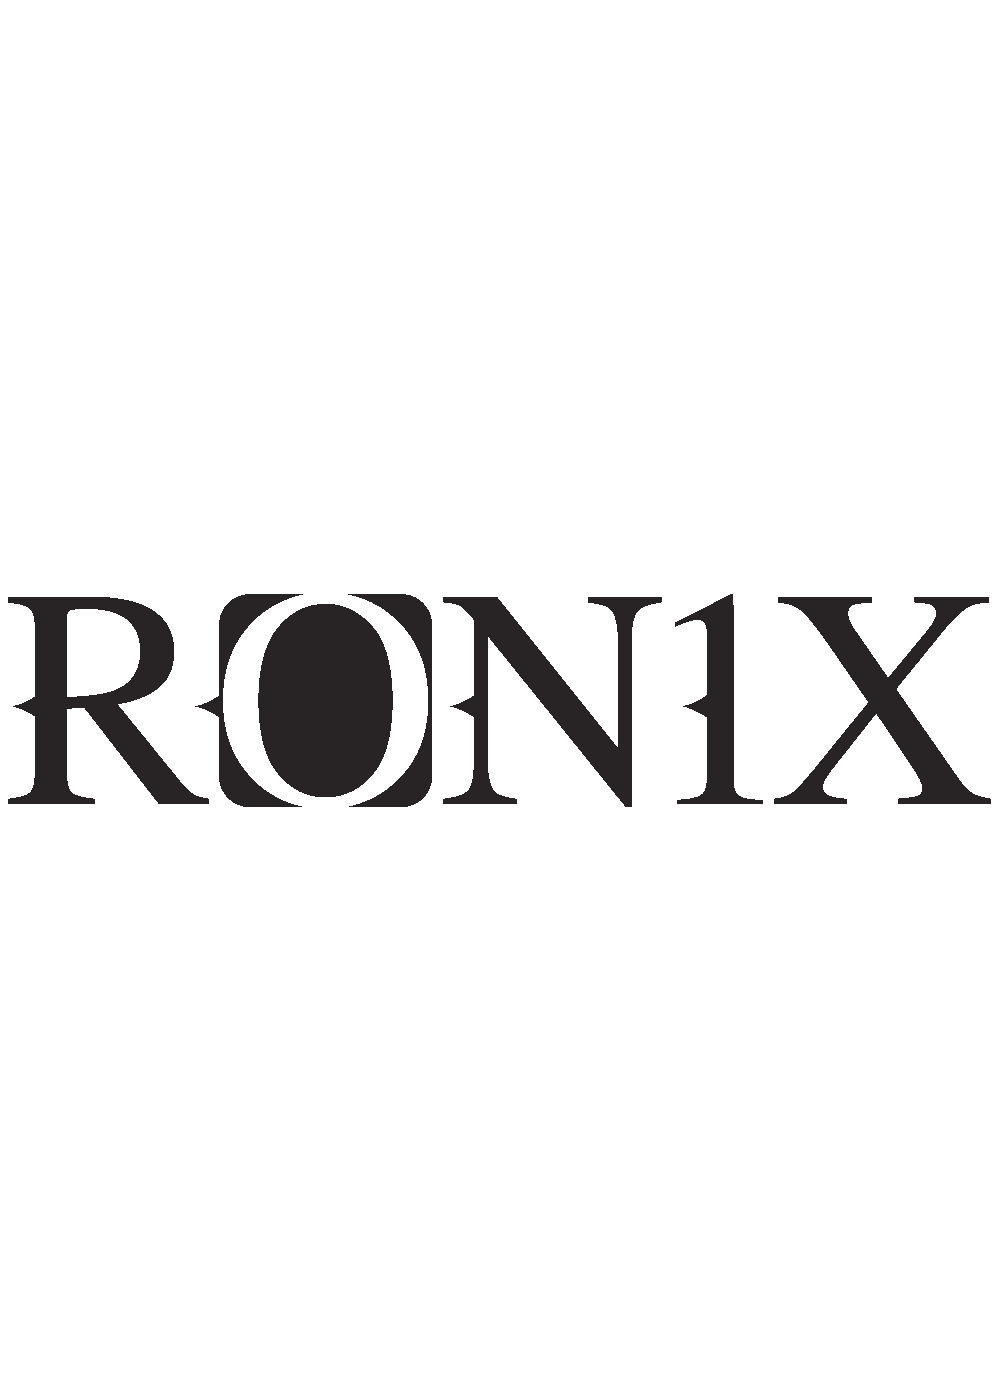 RONIX-STICKER copy